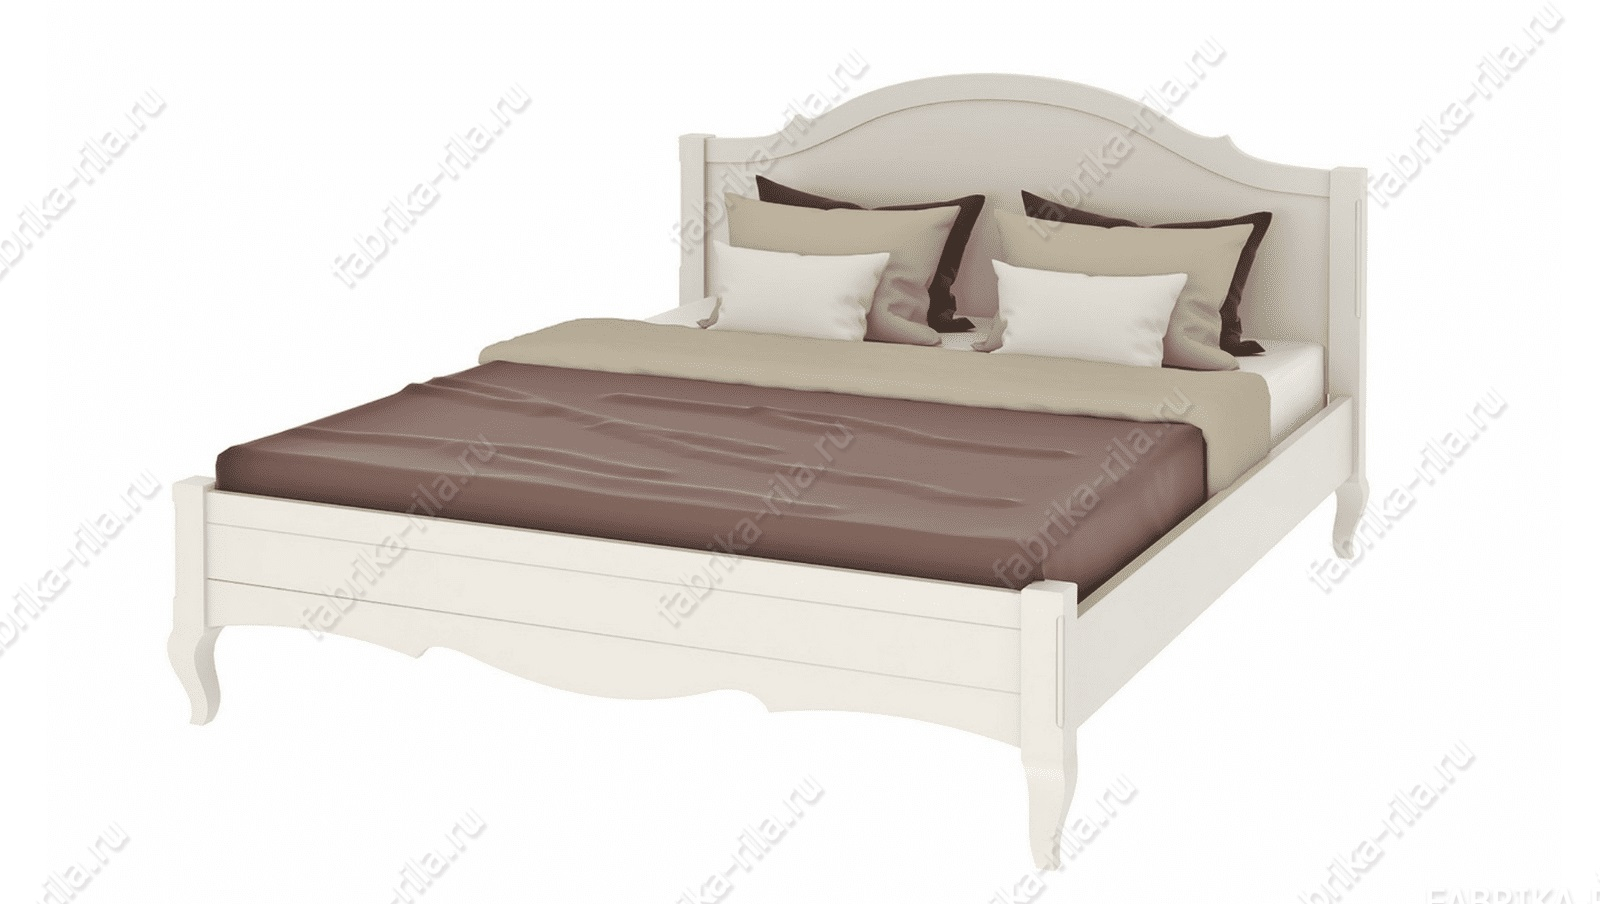 Кровать Palmira-1 — 140x200 см. из сосны